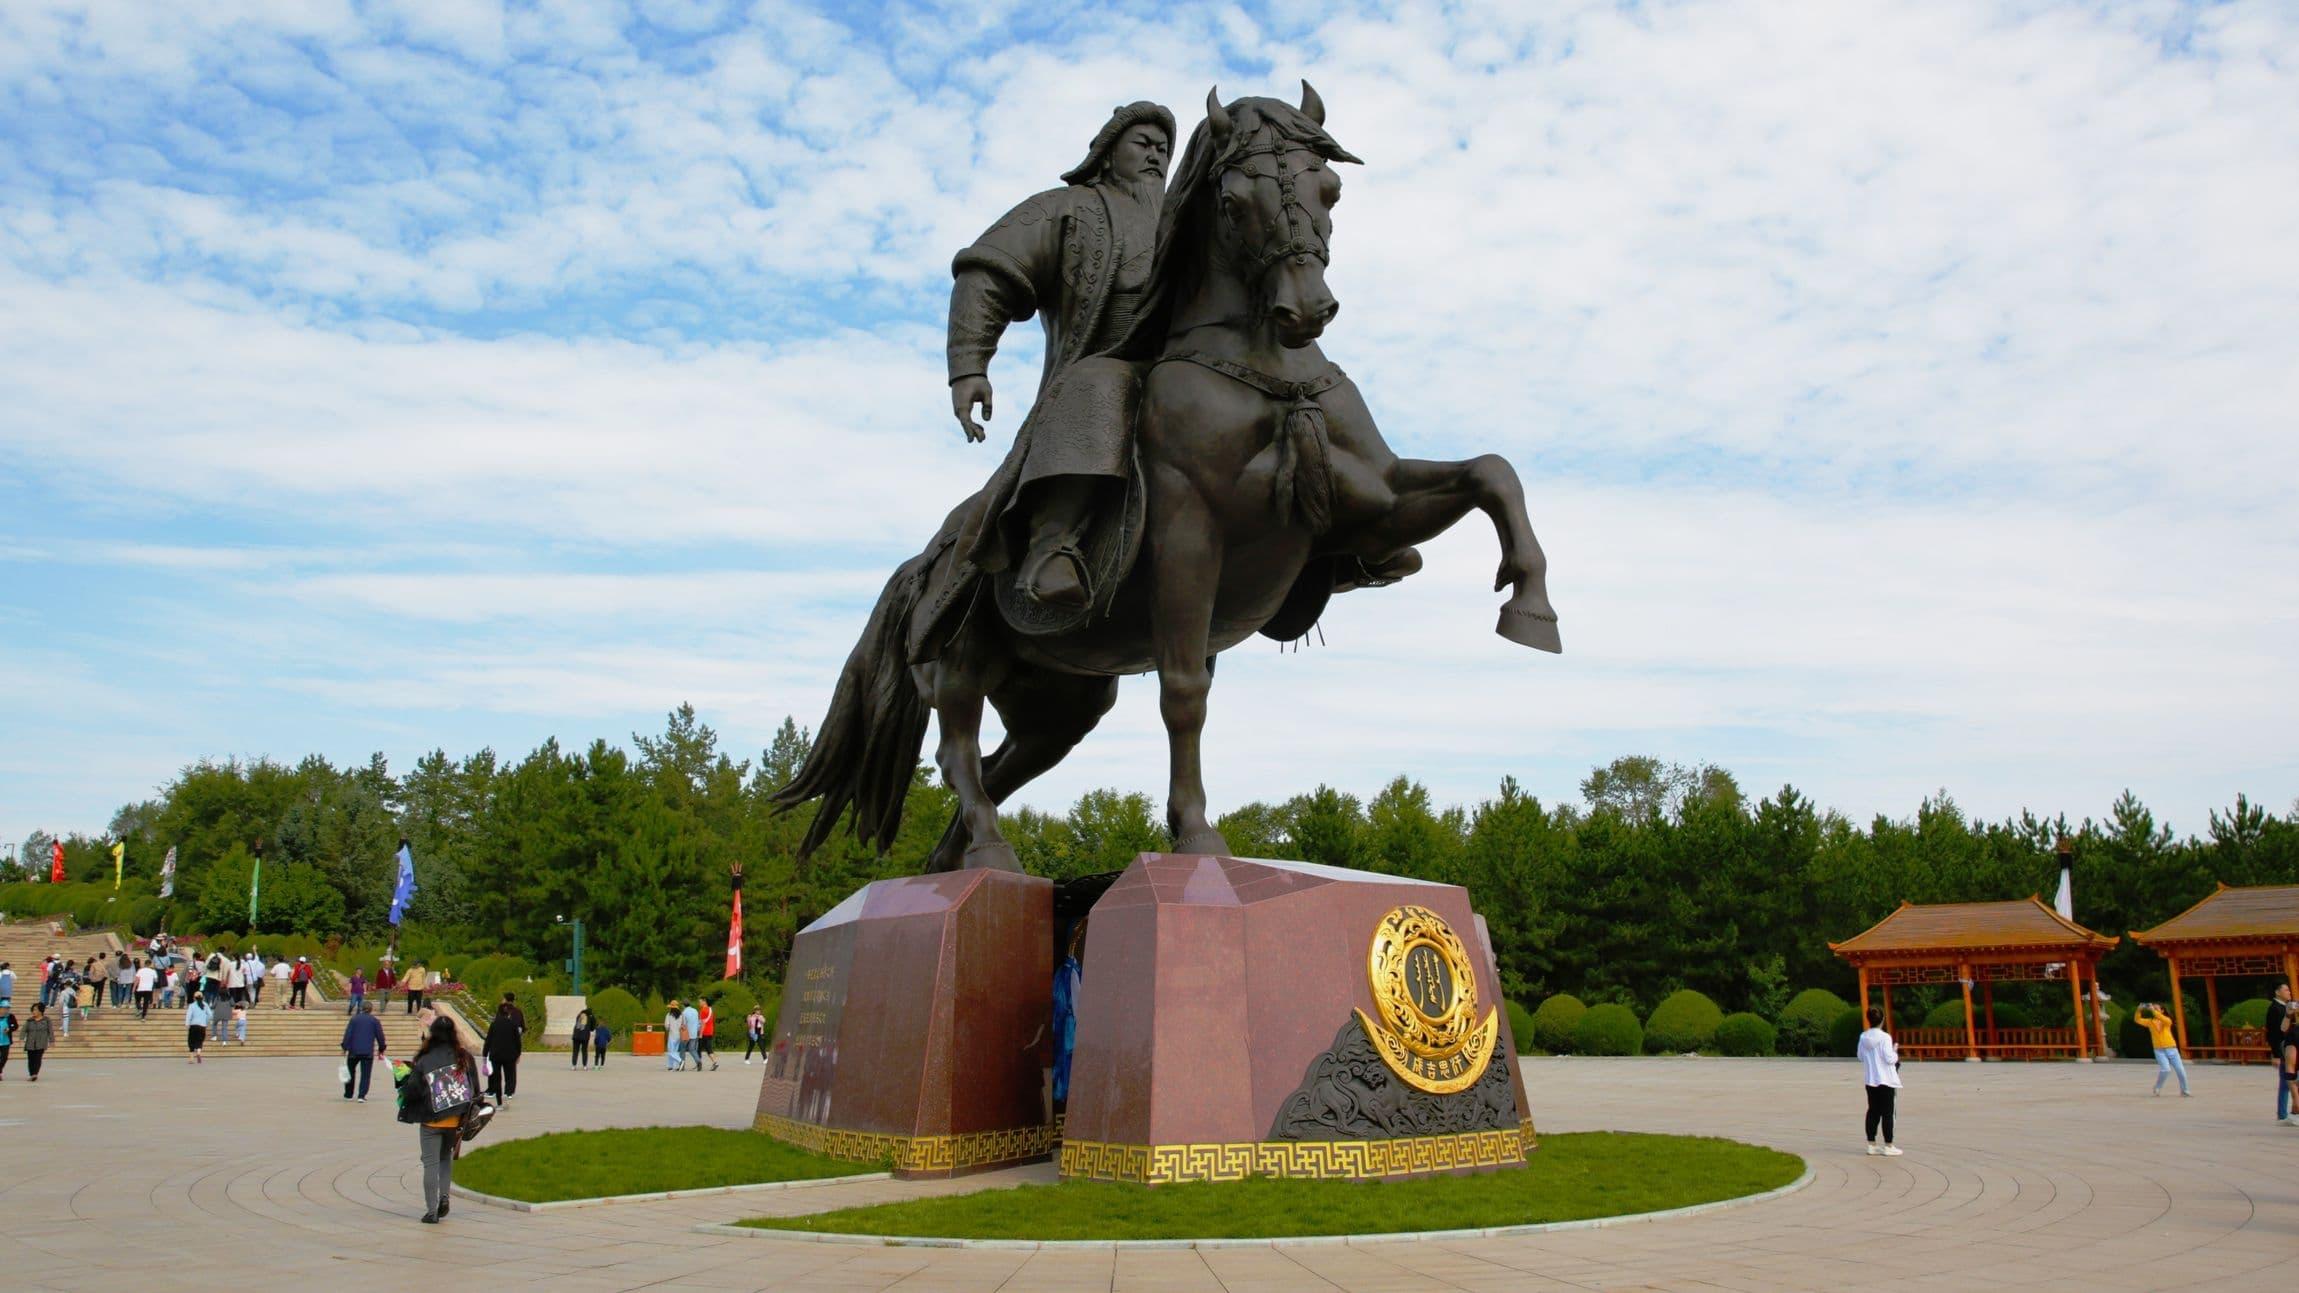 Genghis Khan's Mongolia backdrop